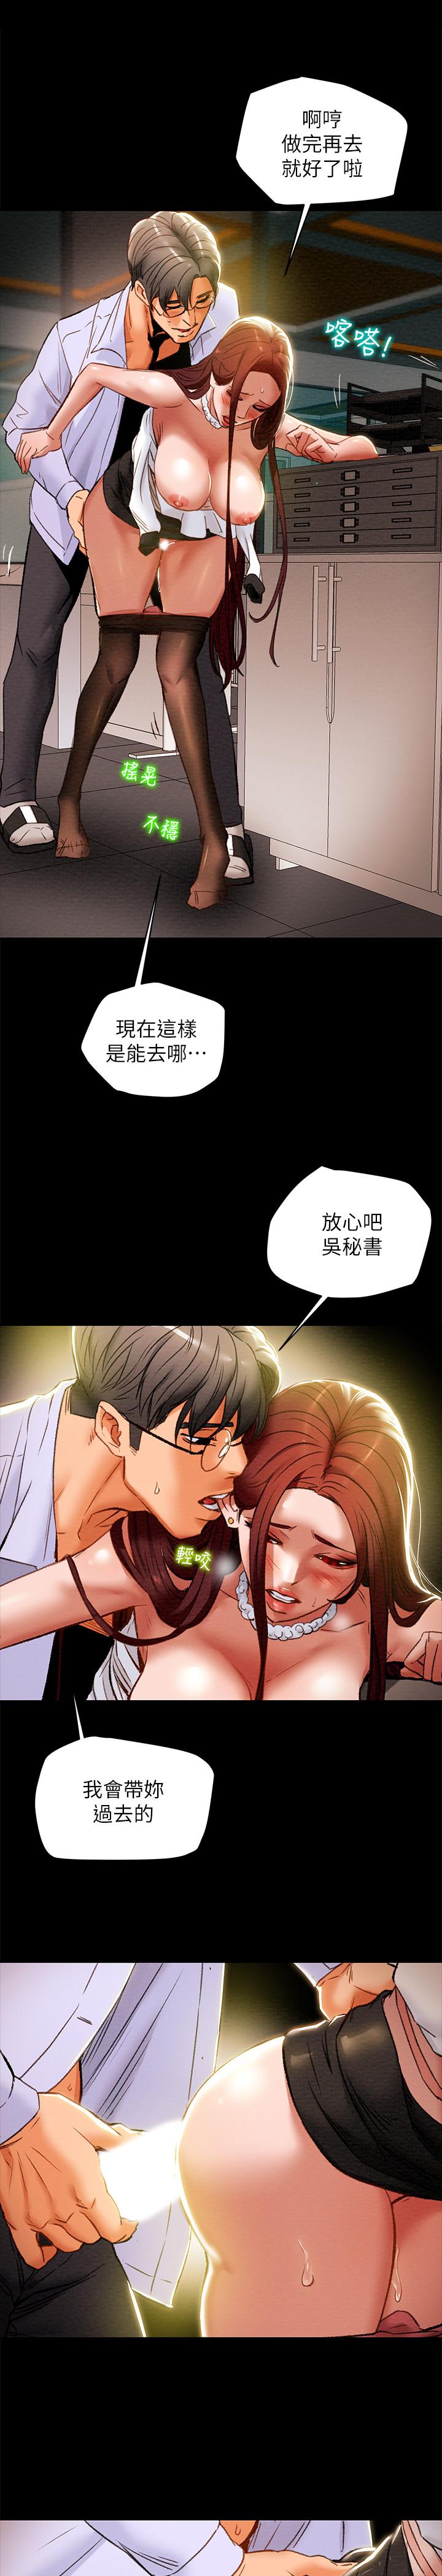 韩国污漫画 純情女攻略計劃 第17话-在老板办公室和秘书做爱 23